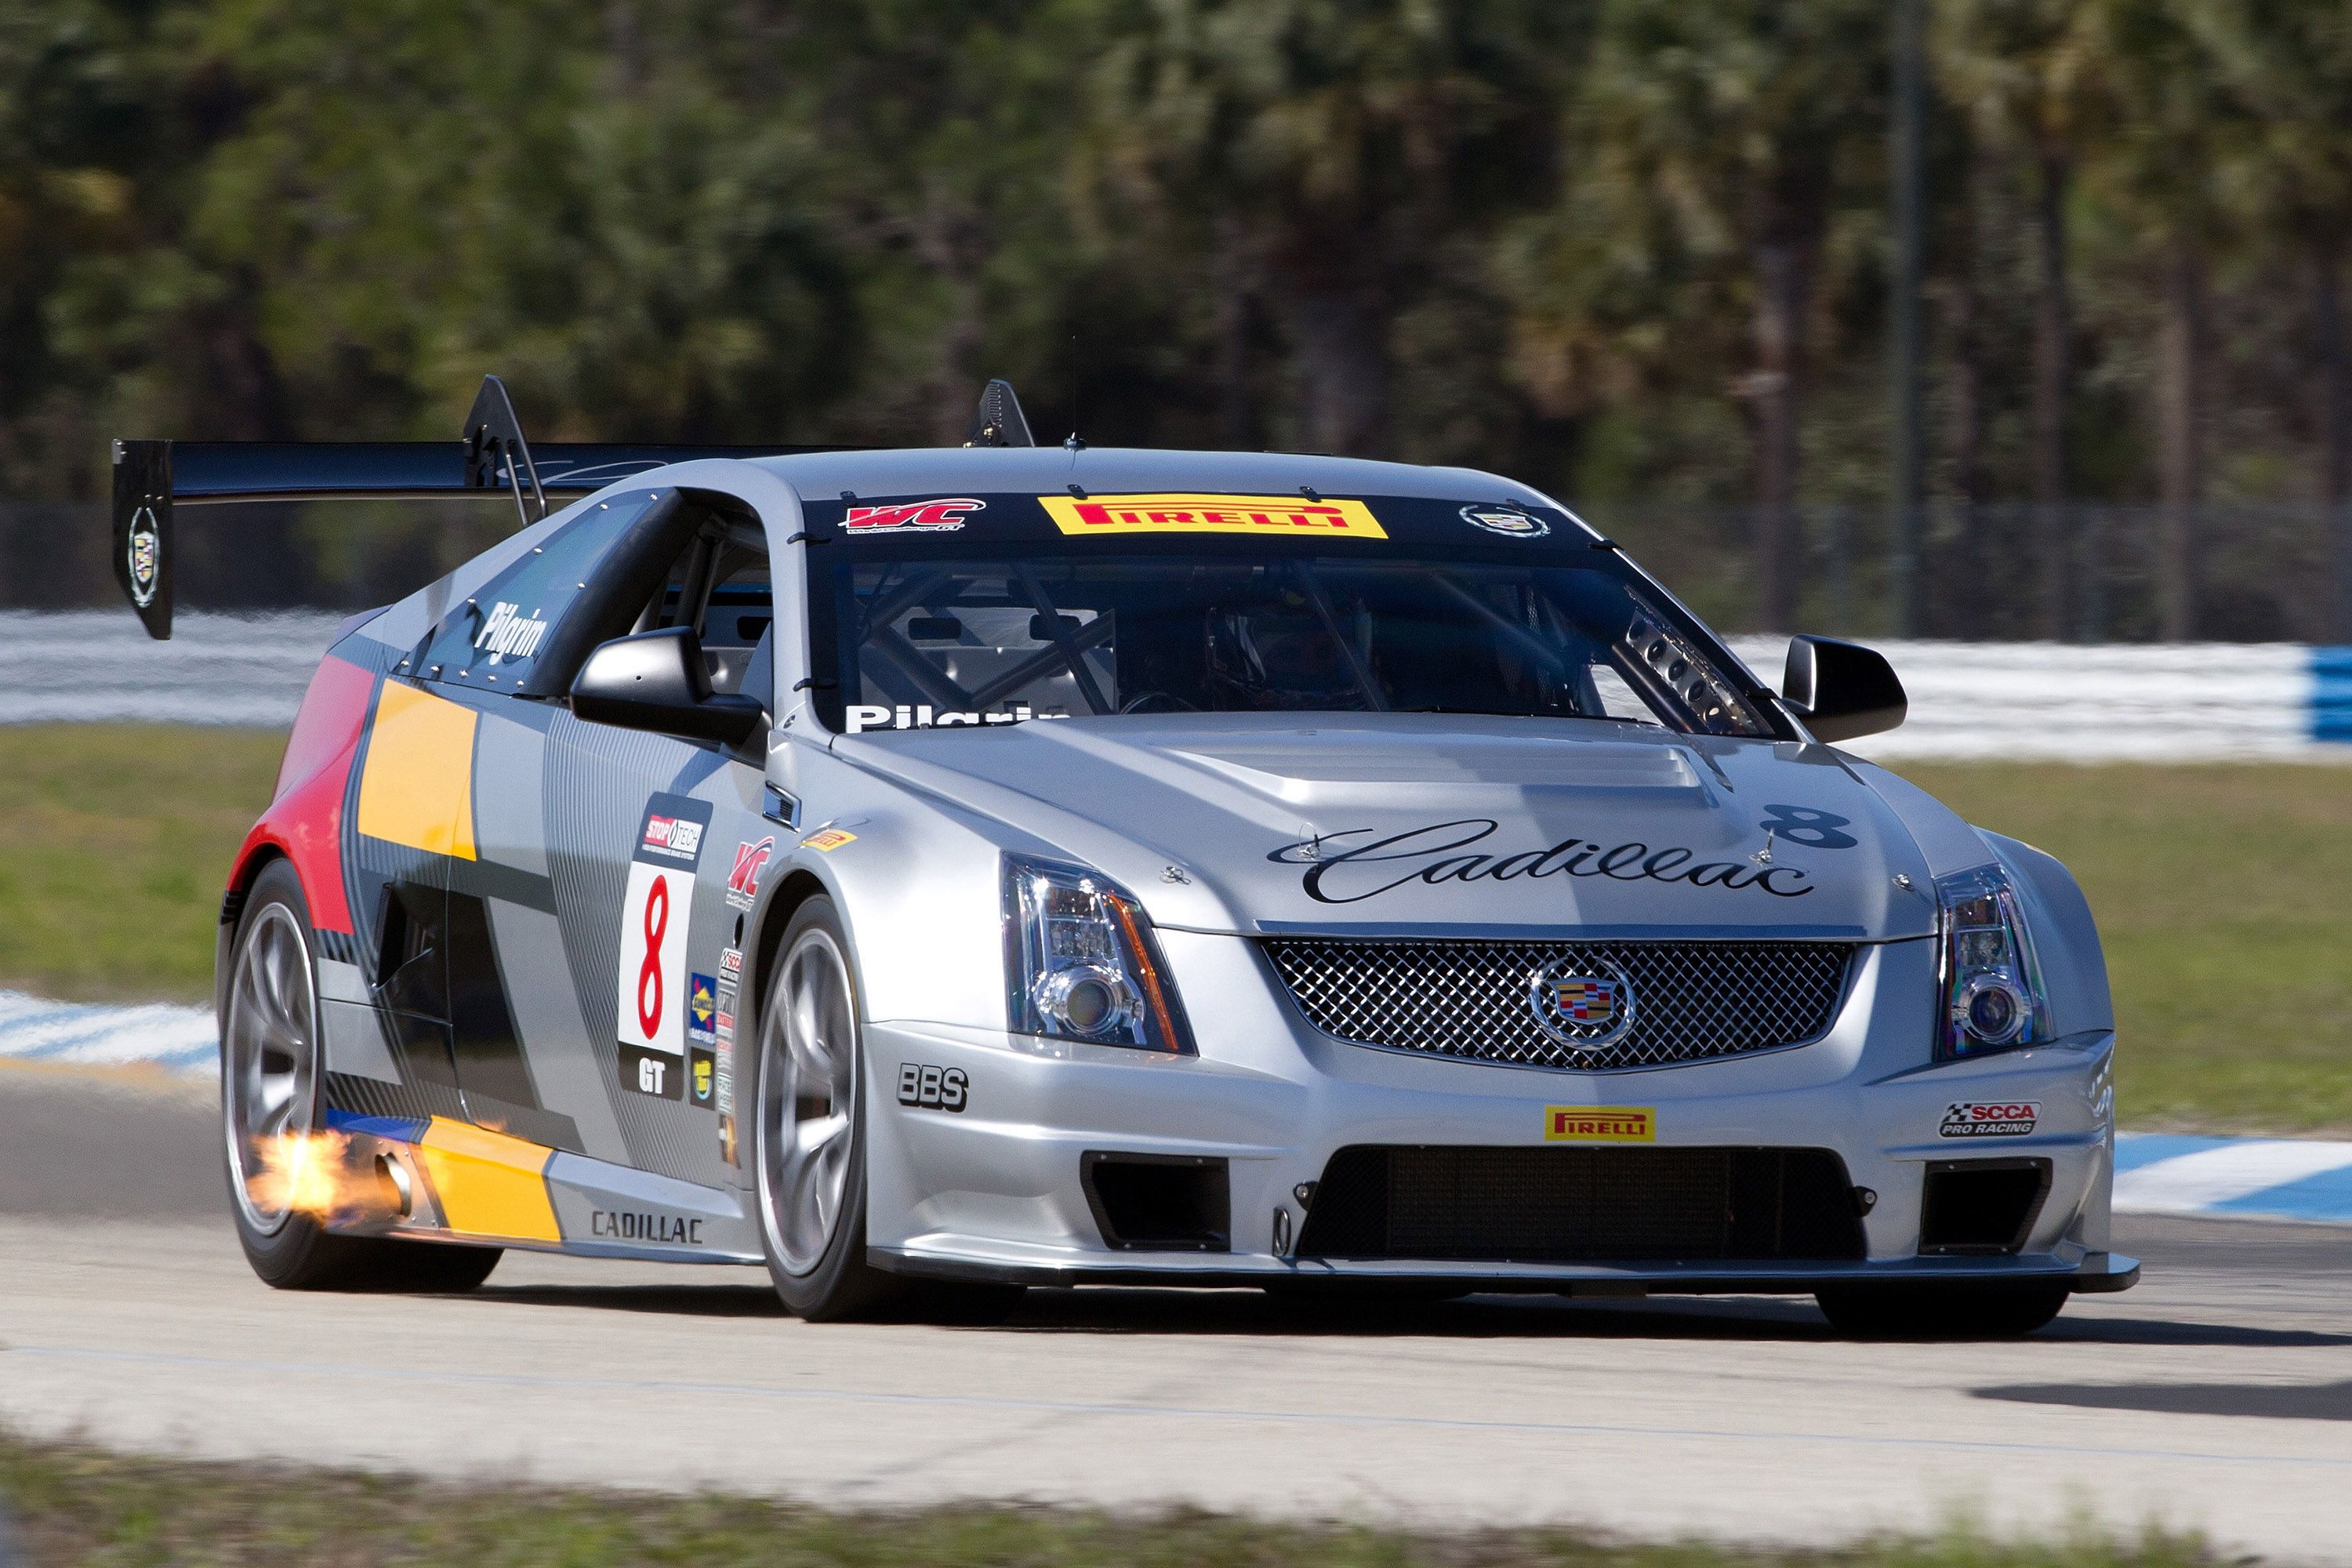 2011 Cadillac CTS-V racing